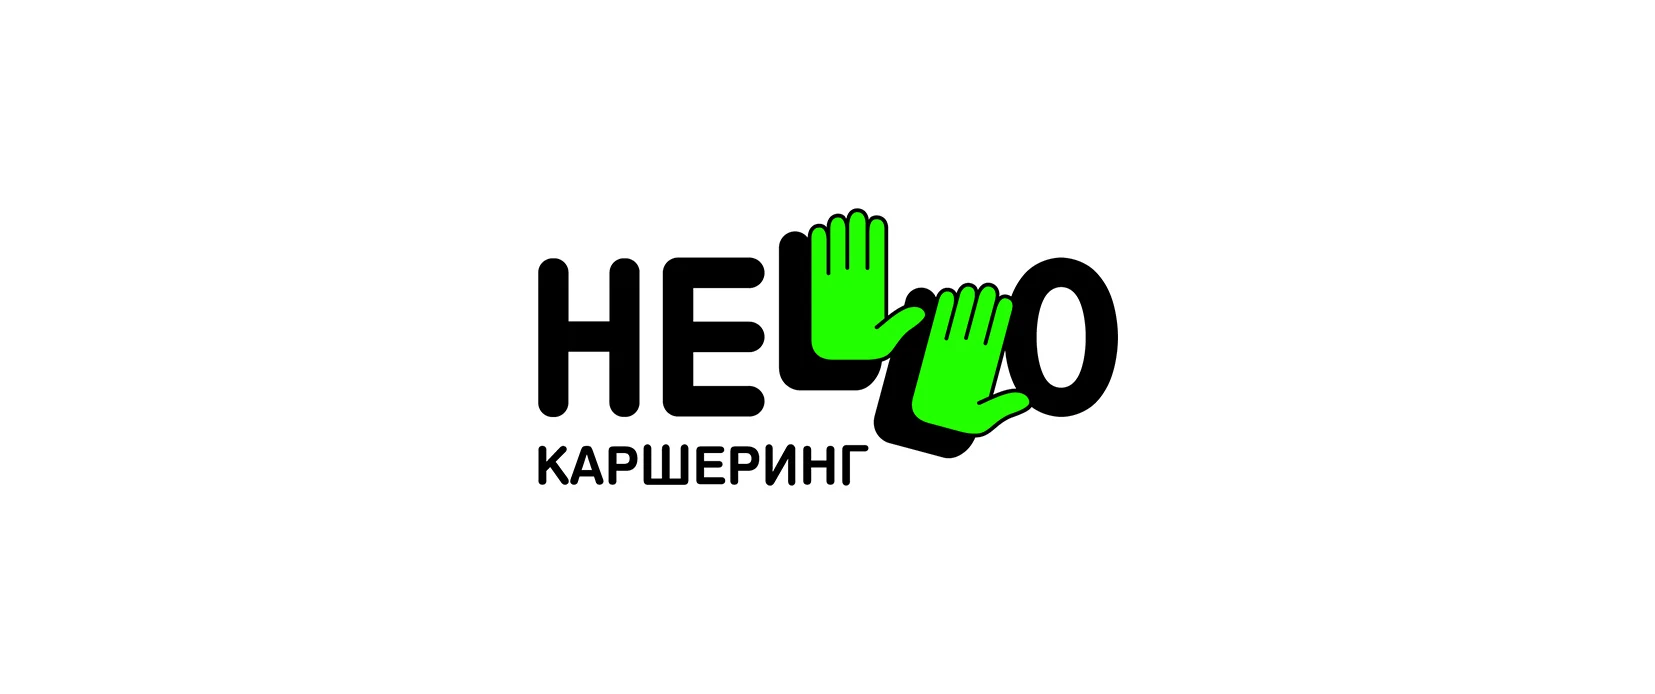 Hello - каршеринг